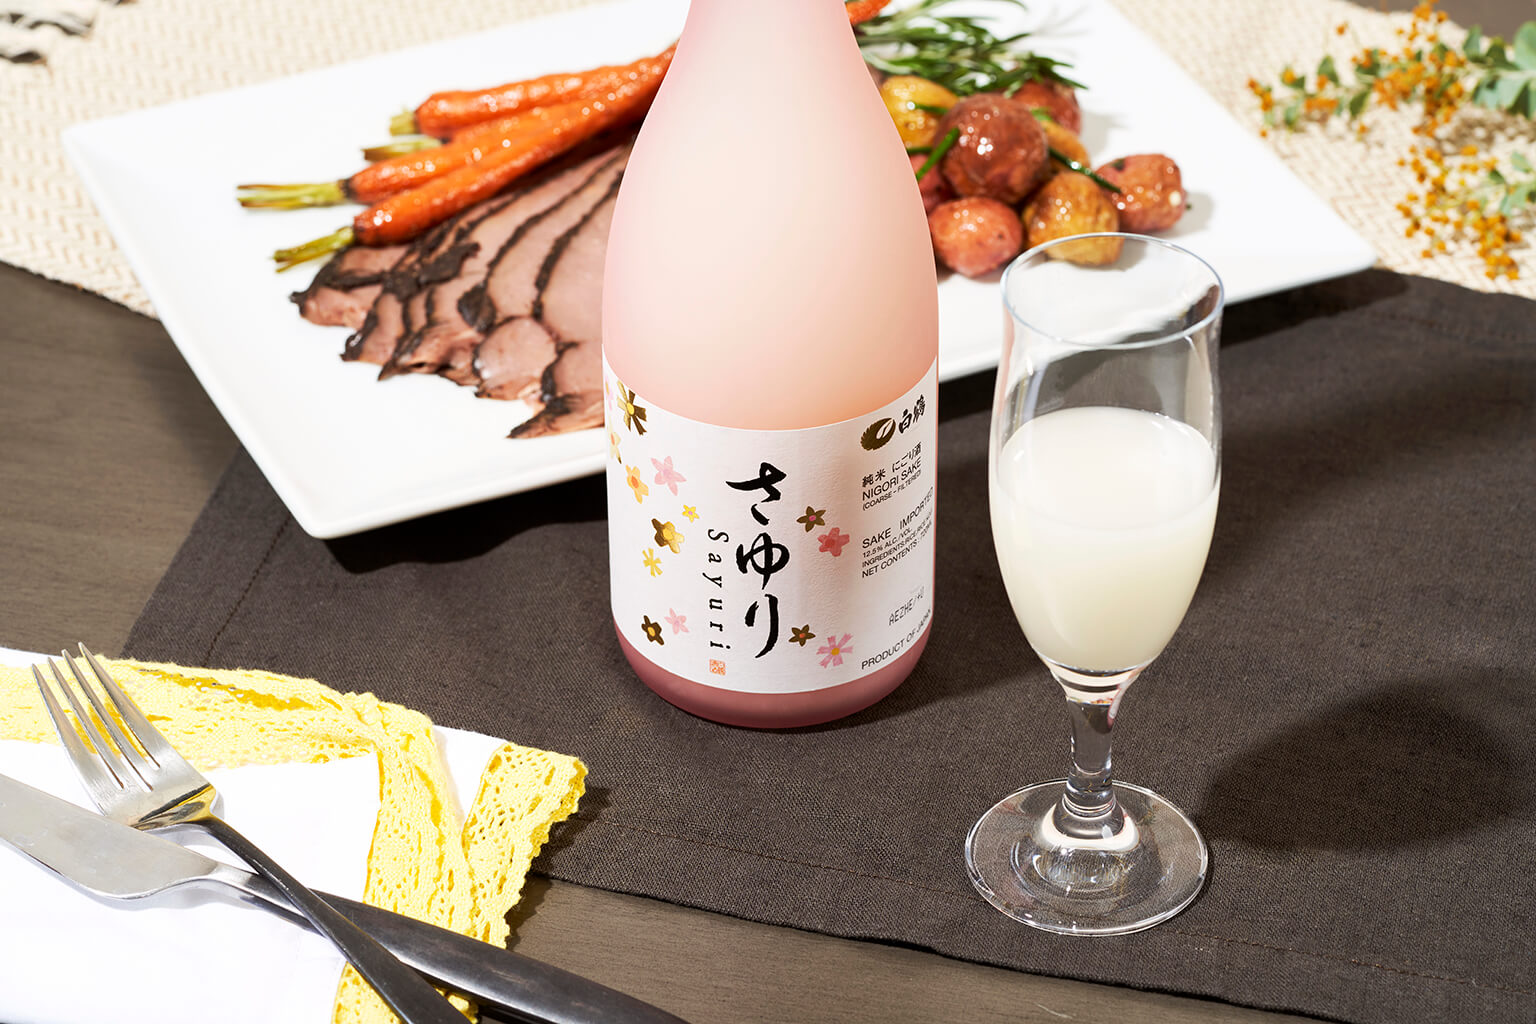 A bottle of nigori sake